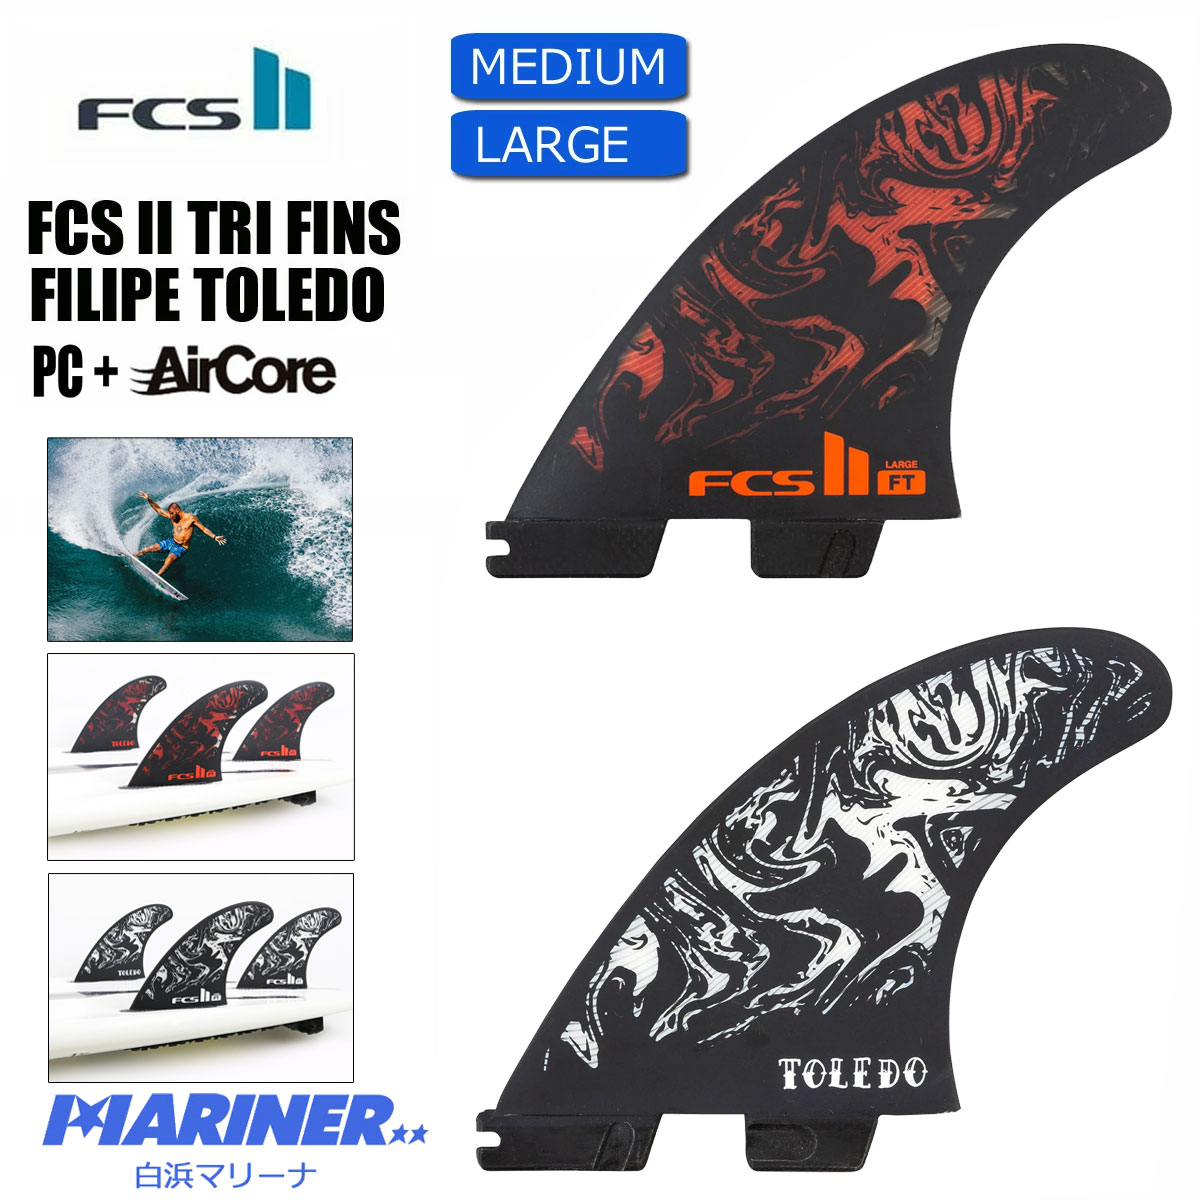 FCS2 FT PC トライフィン Mサイズ BLACK/RED フィリペトレド-